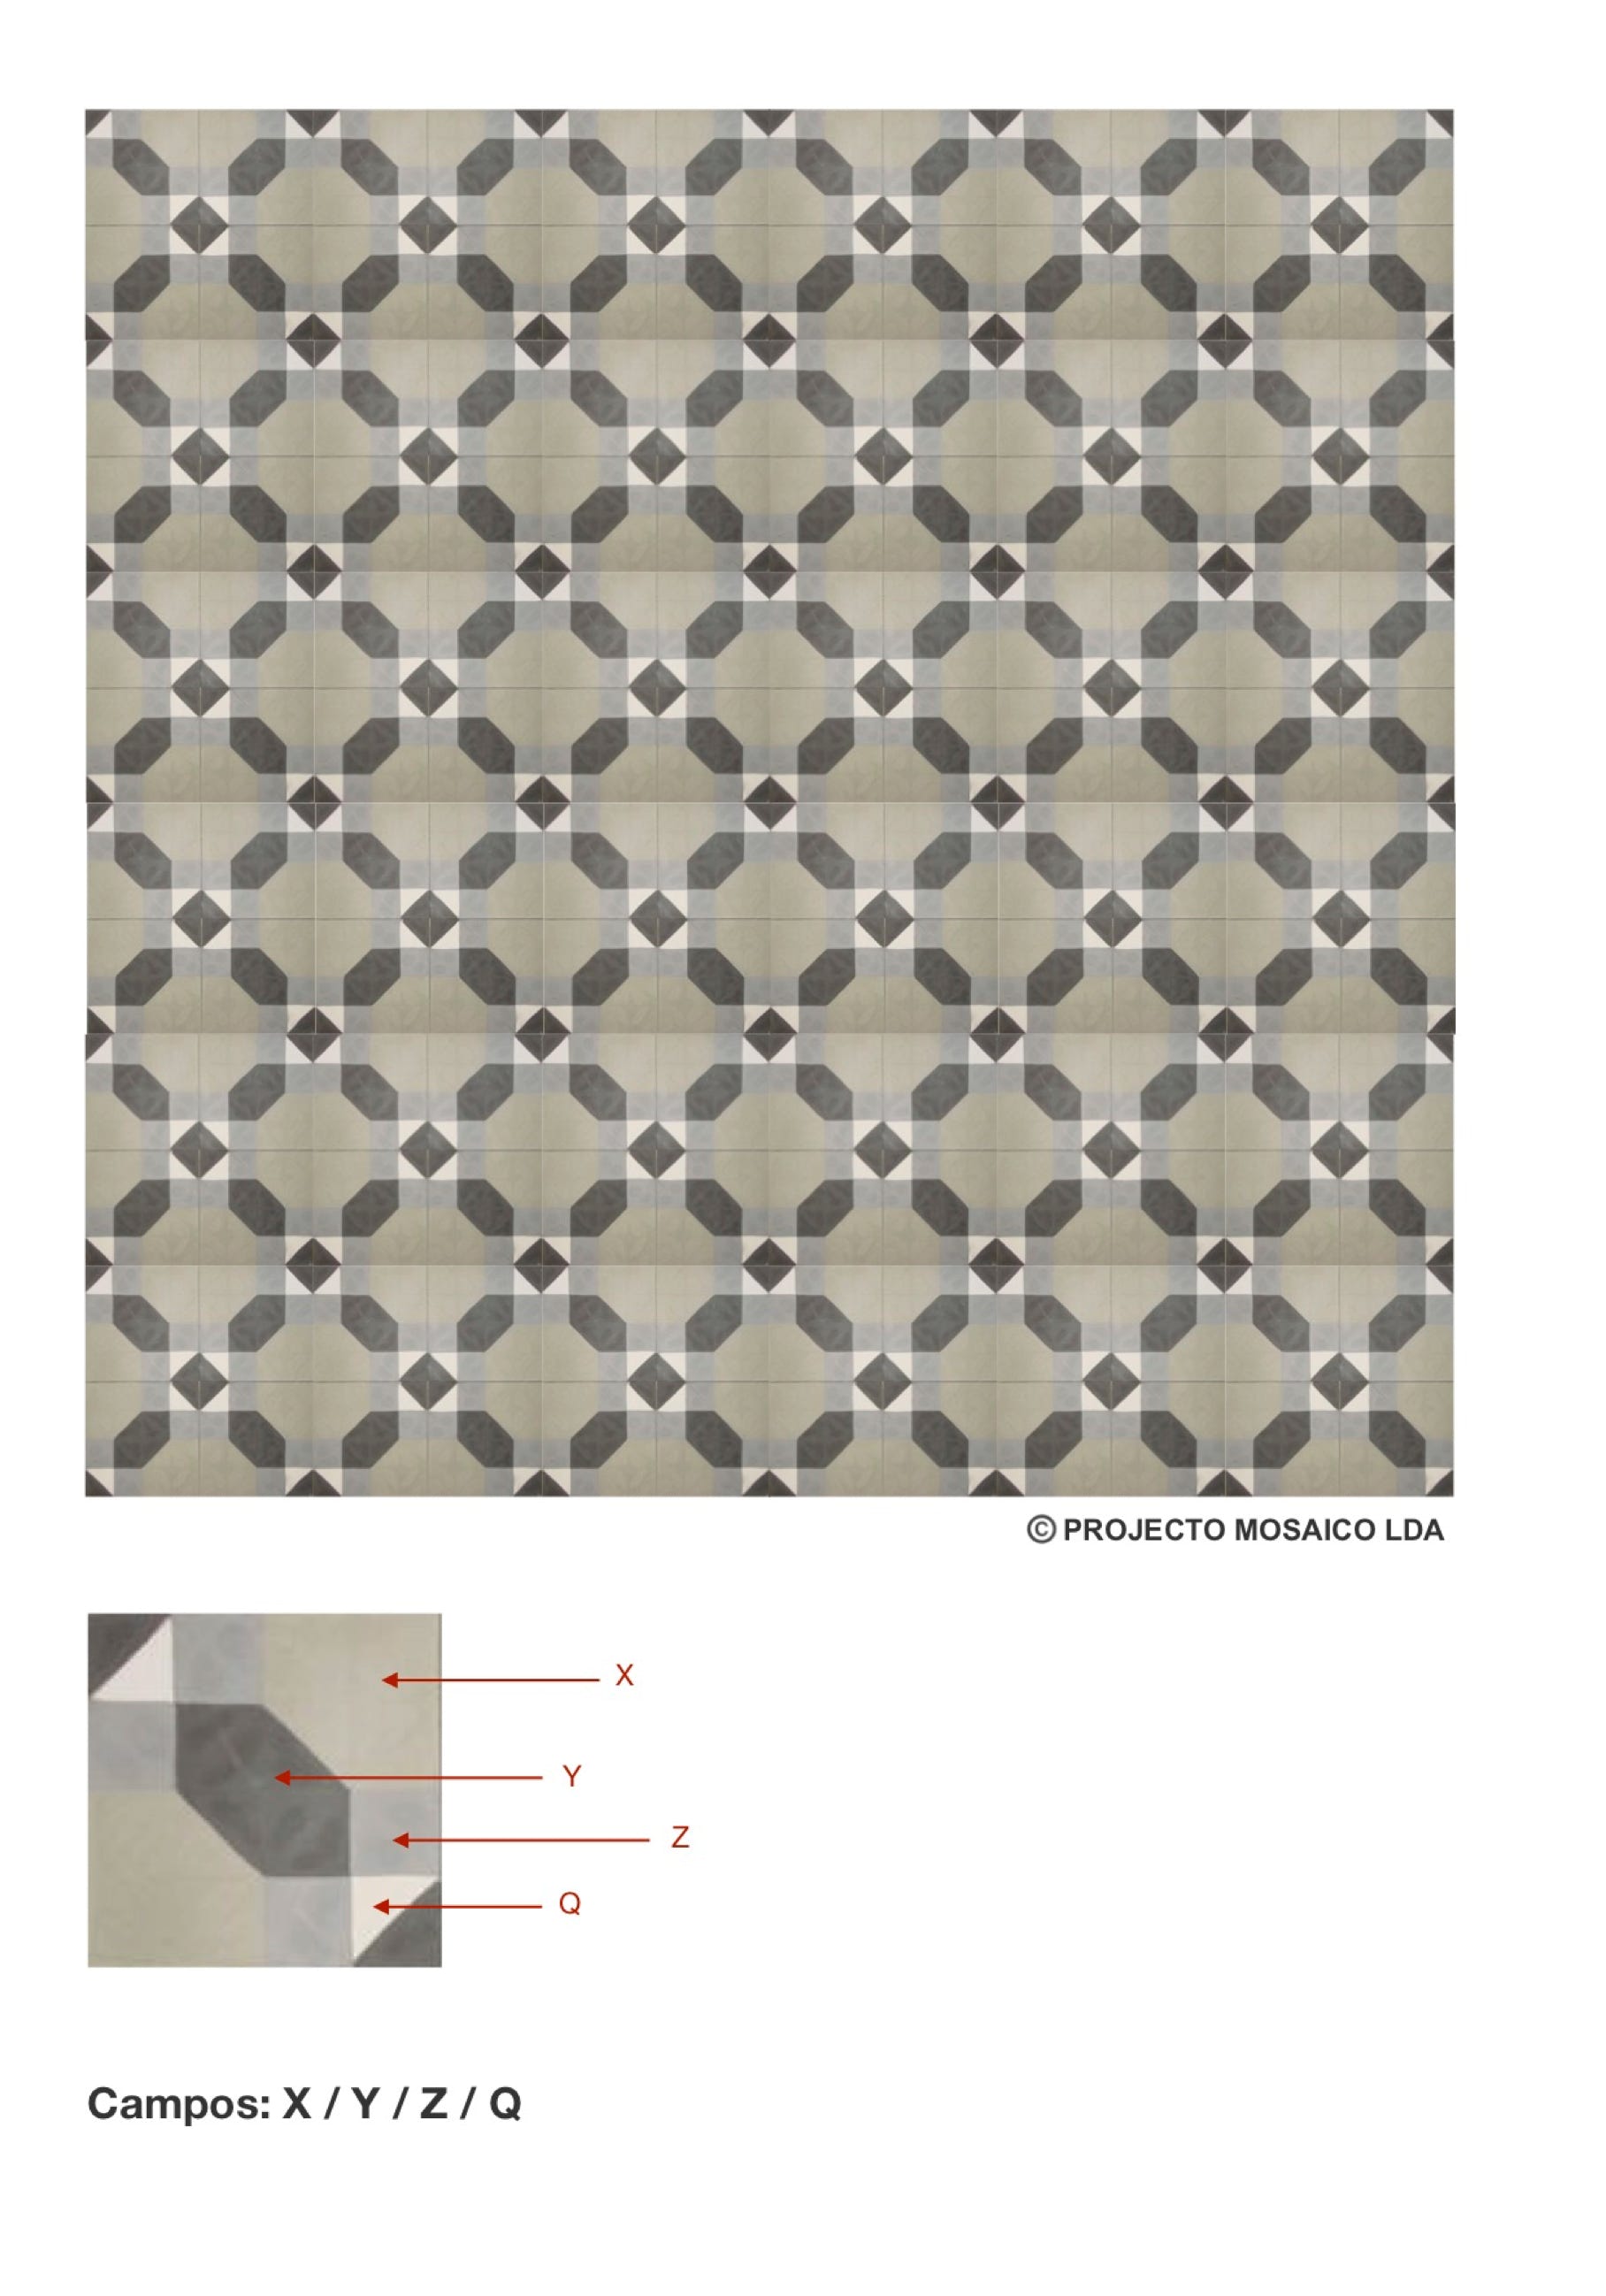 illustração de aplicação do mosaico hidráulico ref: Campos